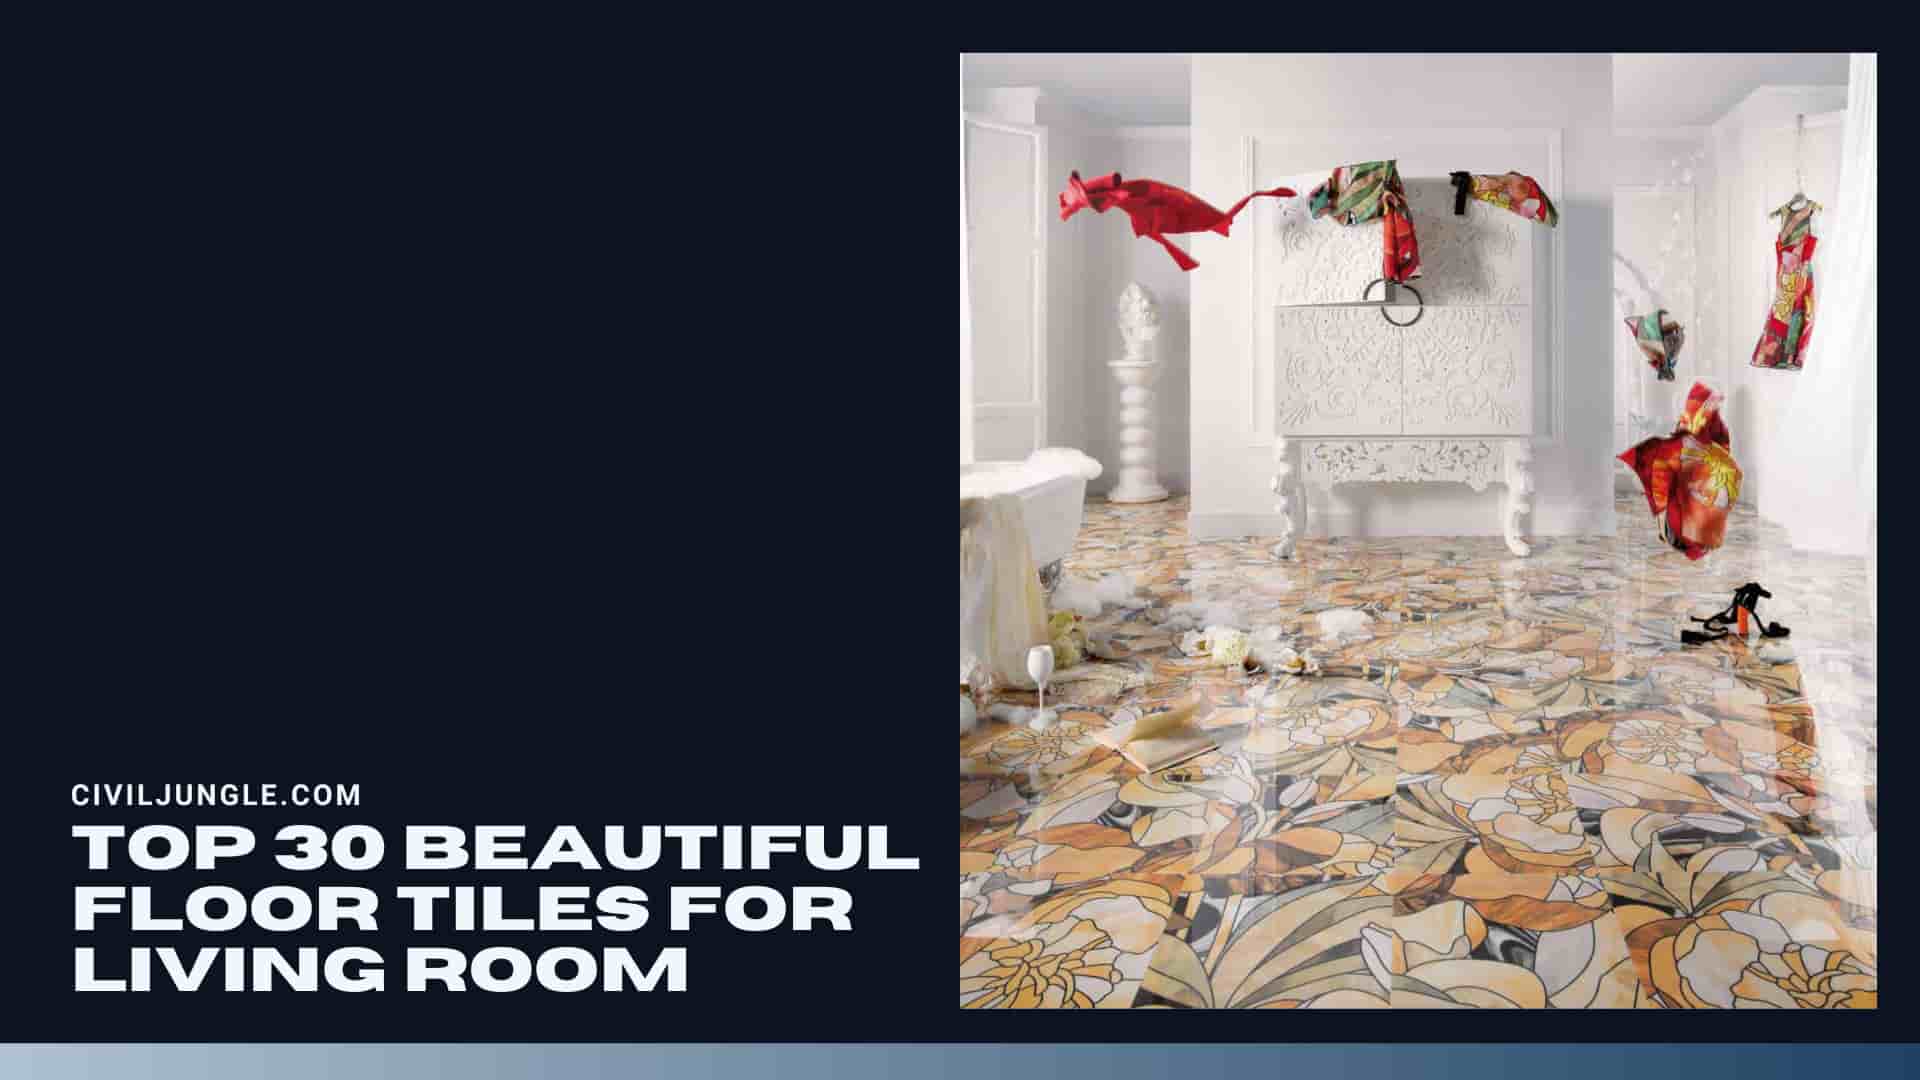 Top 30 Beautiful Floor Tiles for Living Room